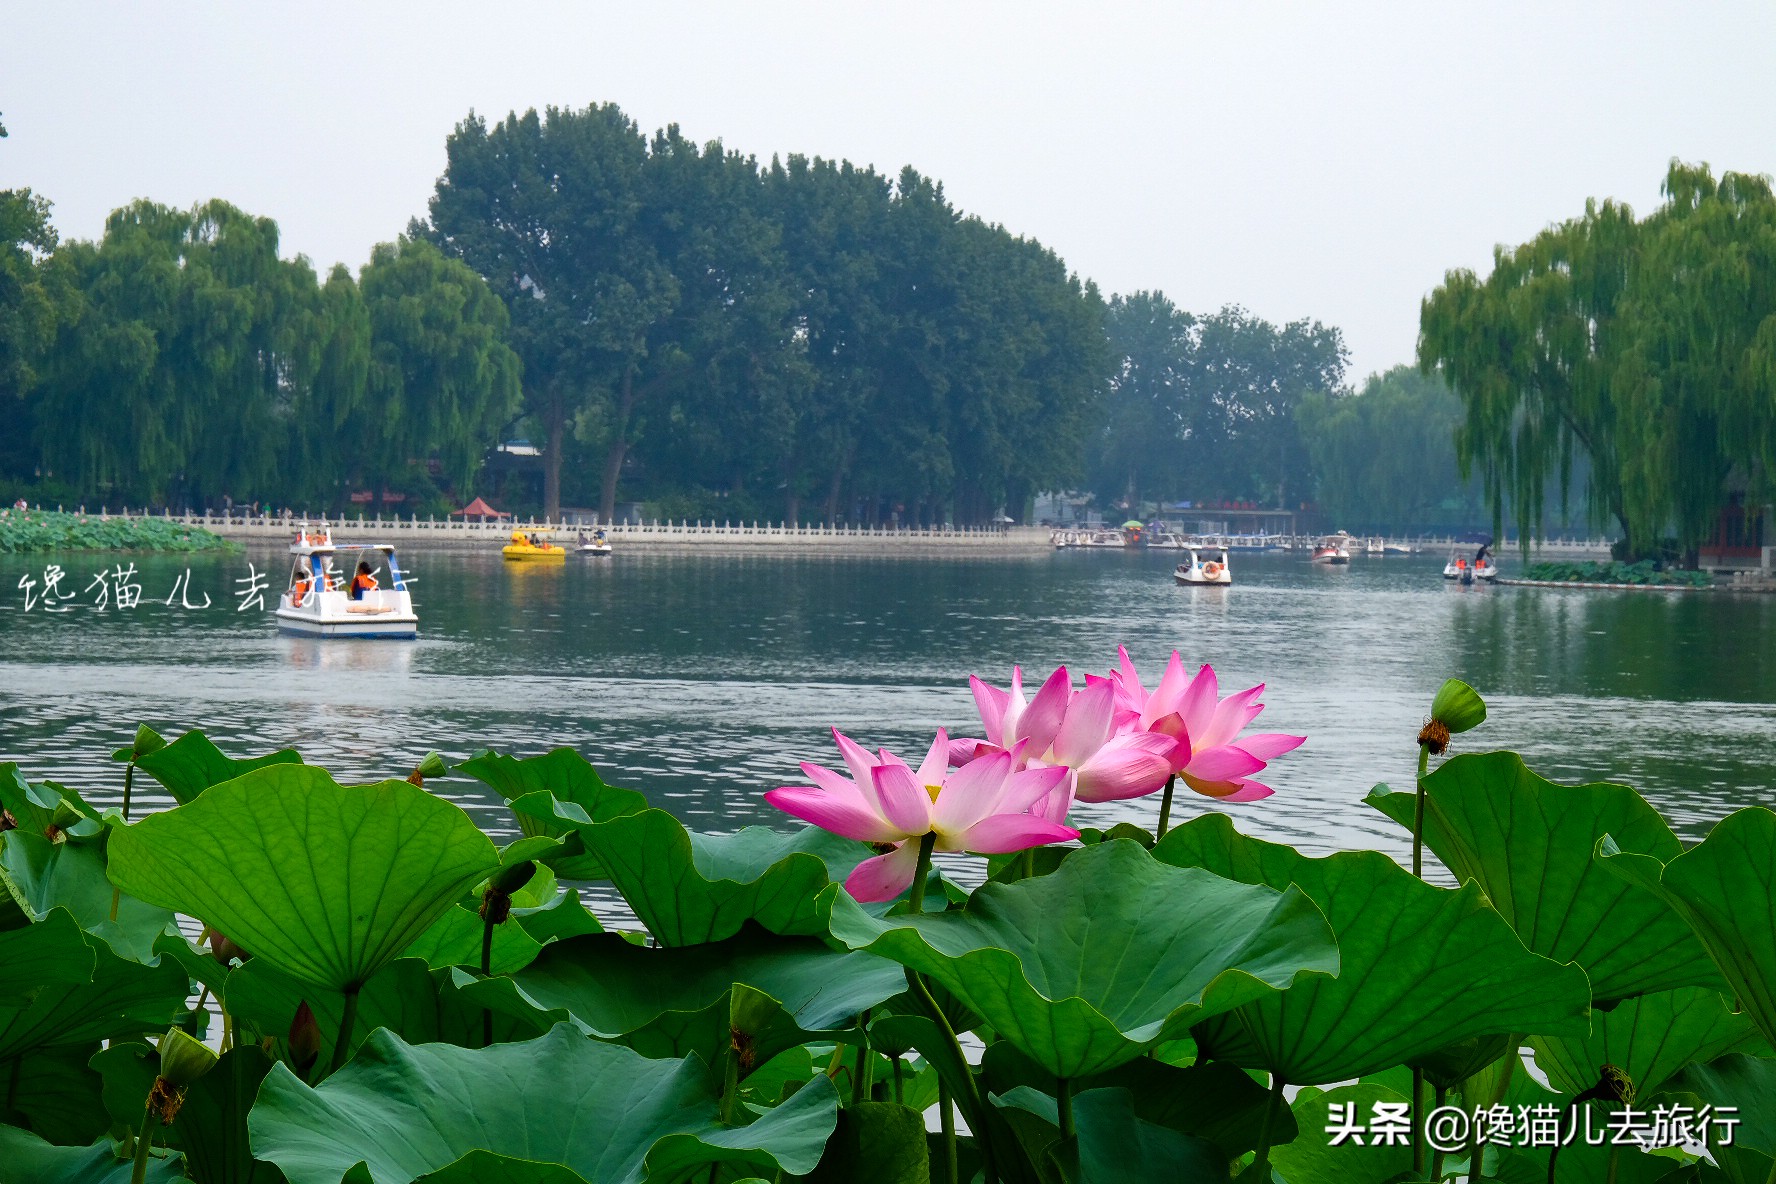 北京郊区一日游或者长城一日游，有什么高质量又省心的玩法吗？